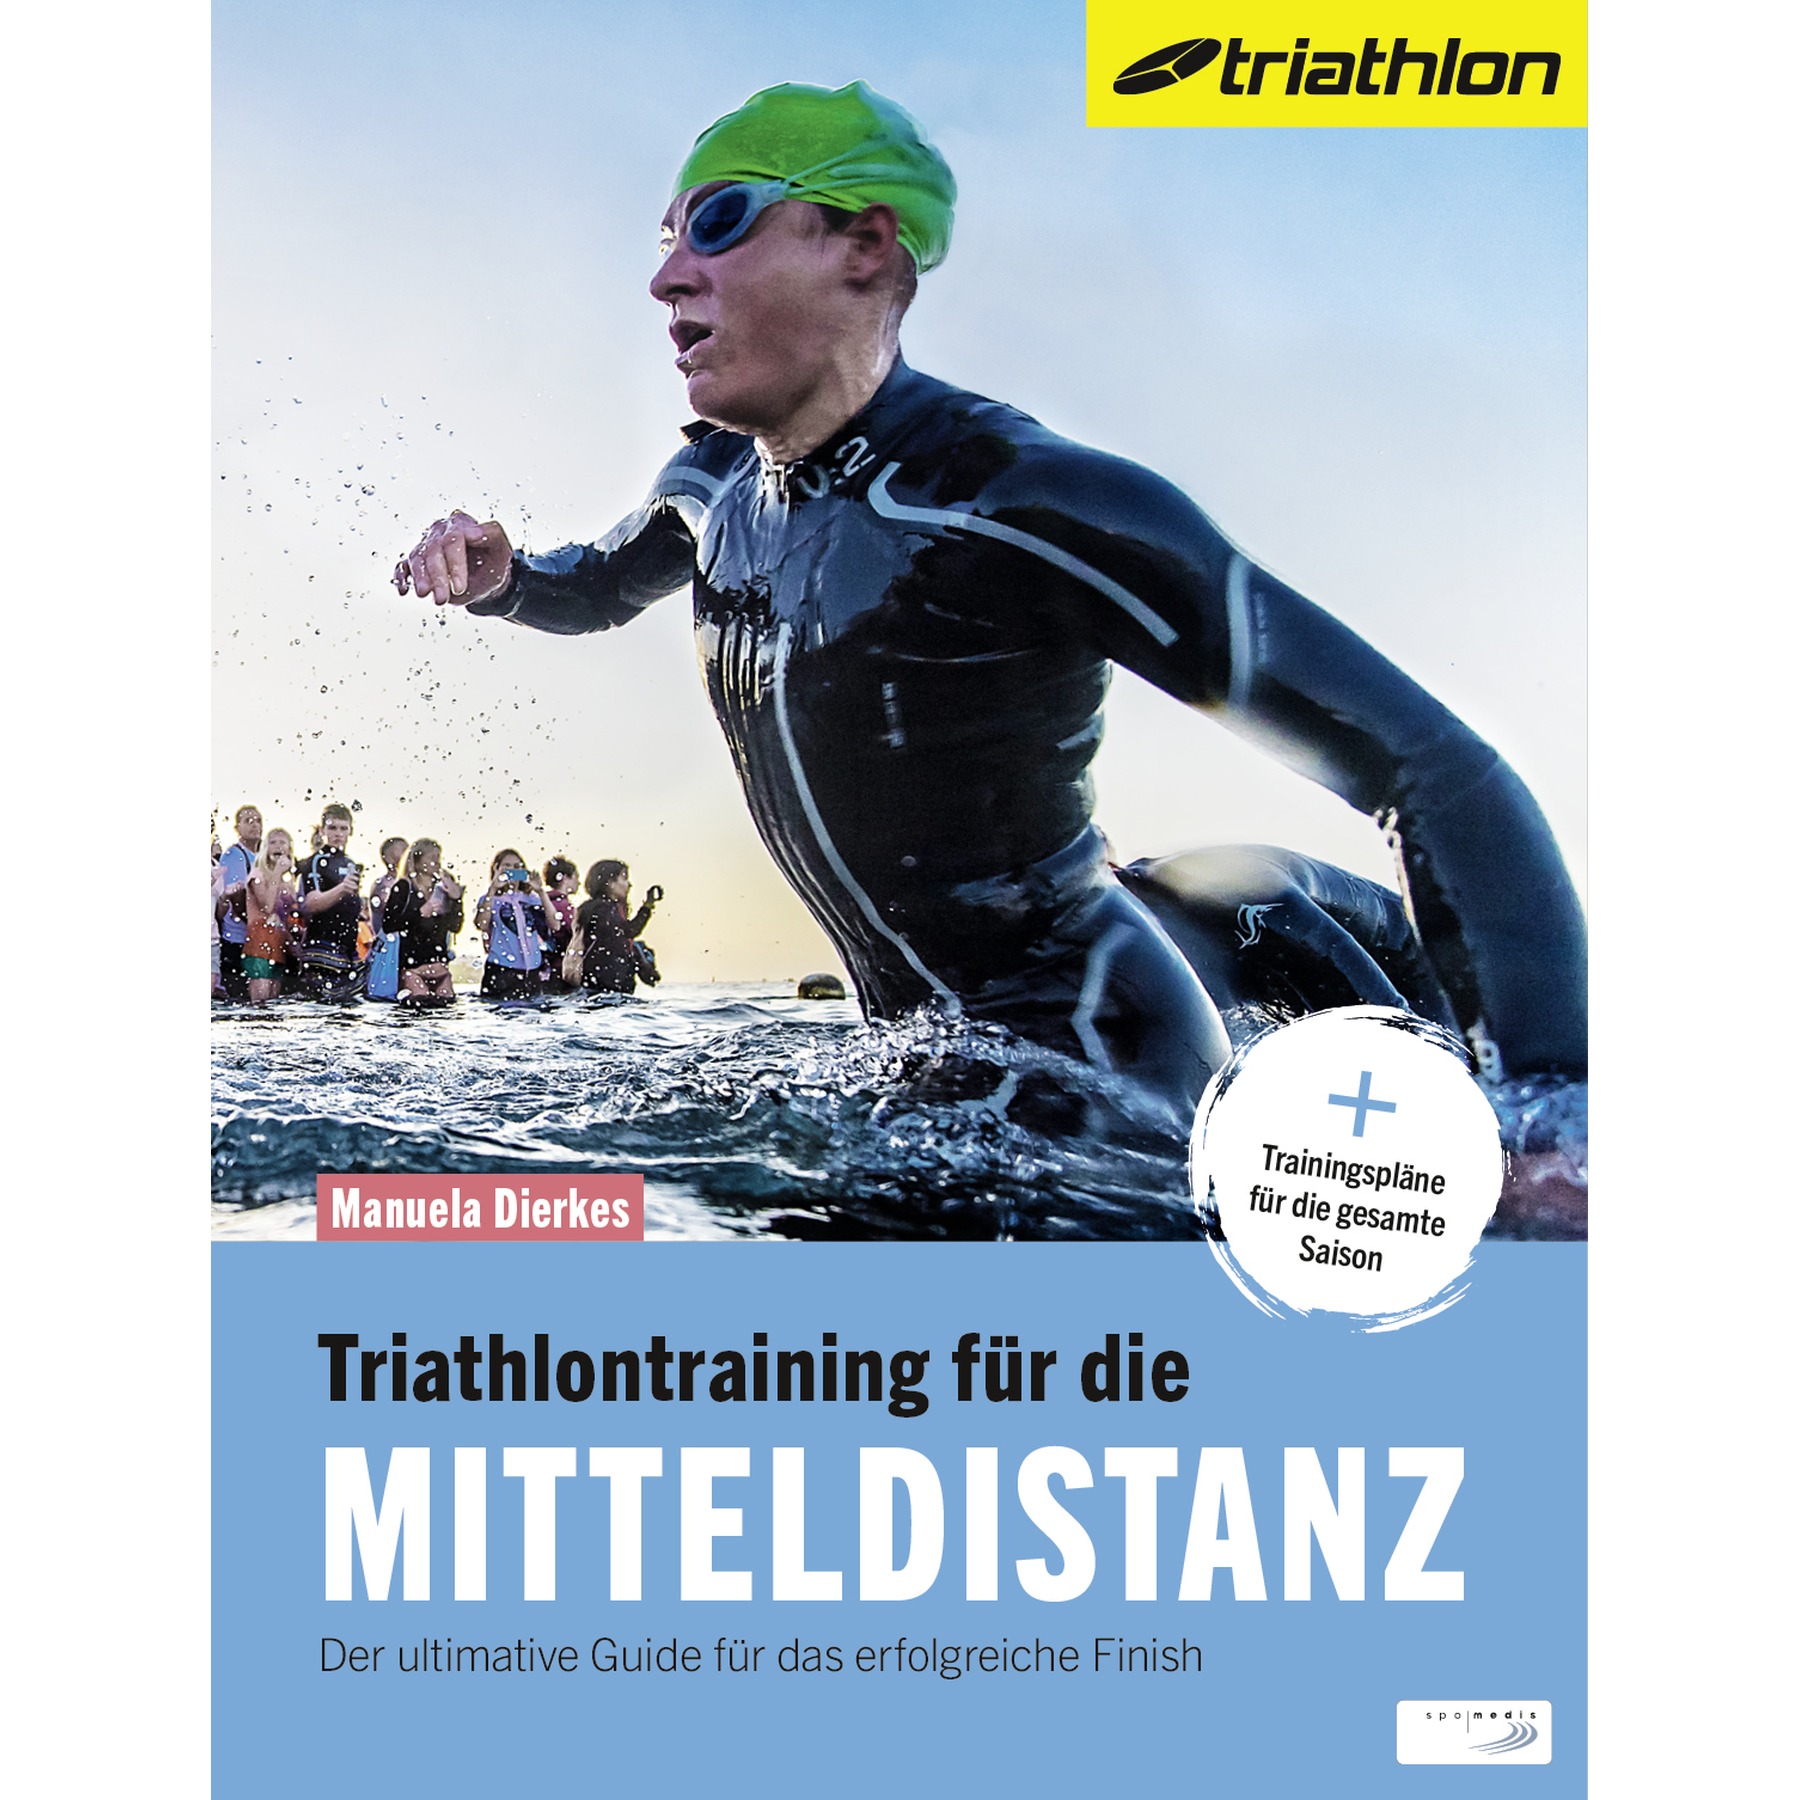 Productfoto van Triathlontraining für die Mitteldistanz